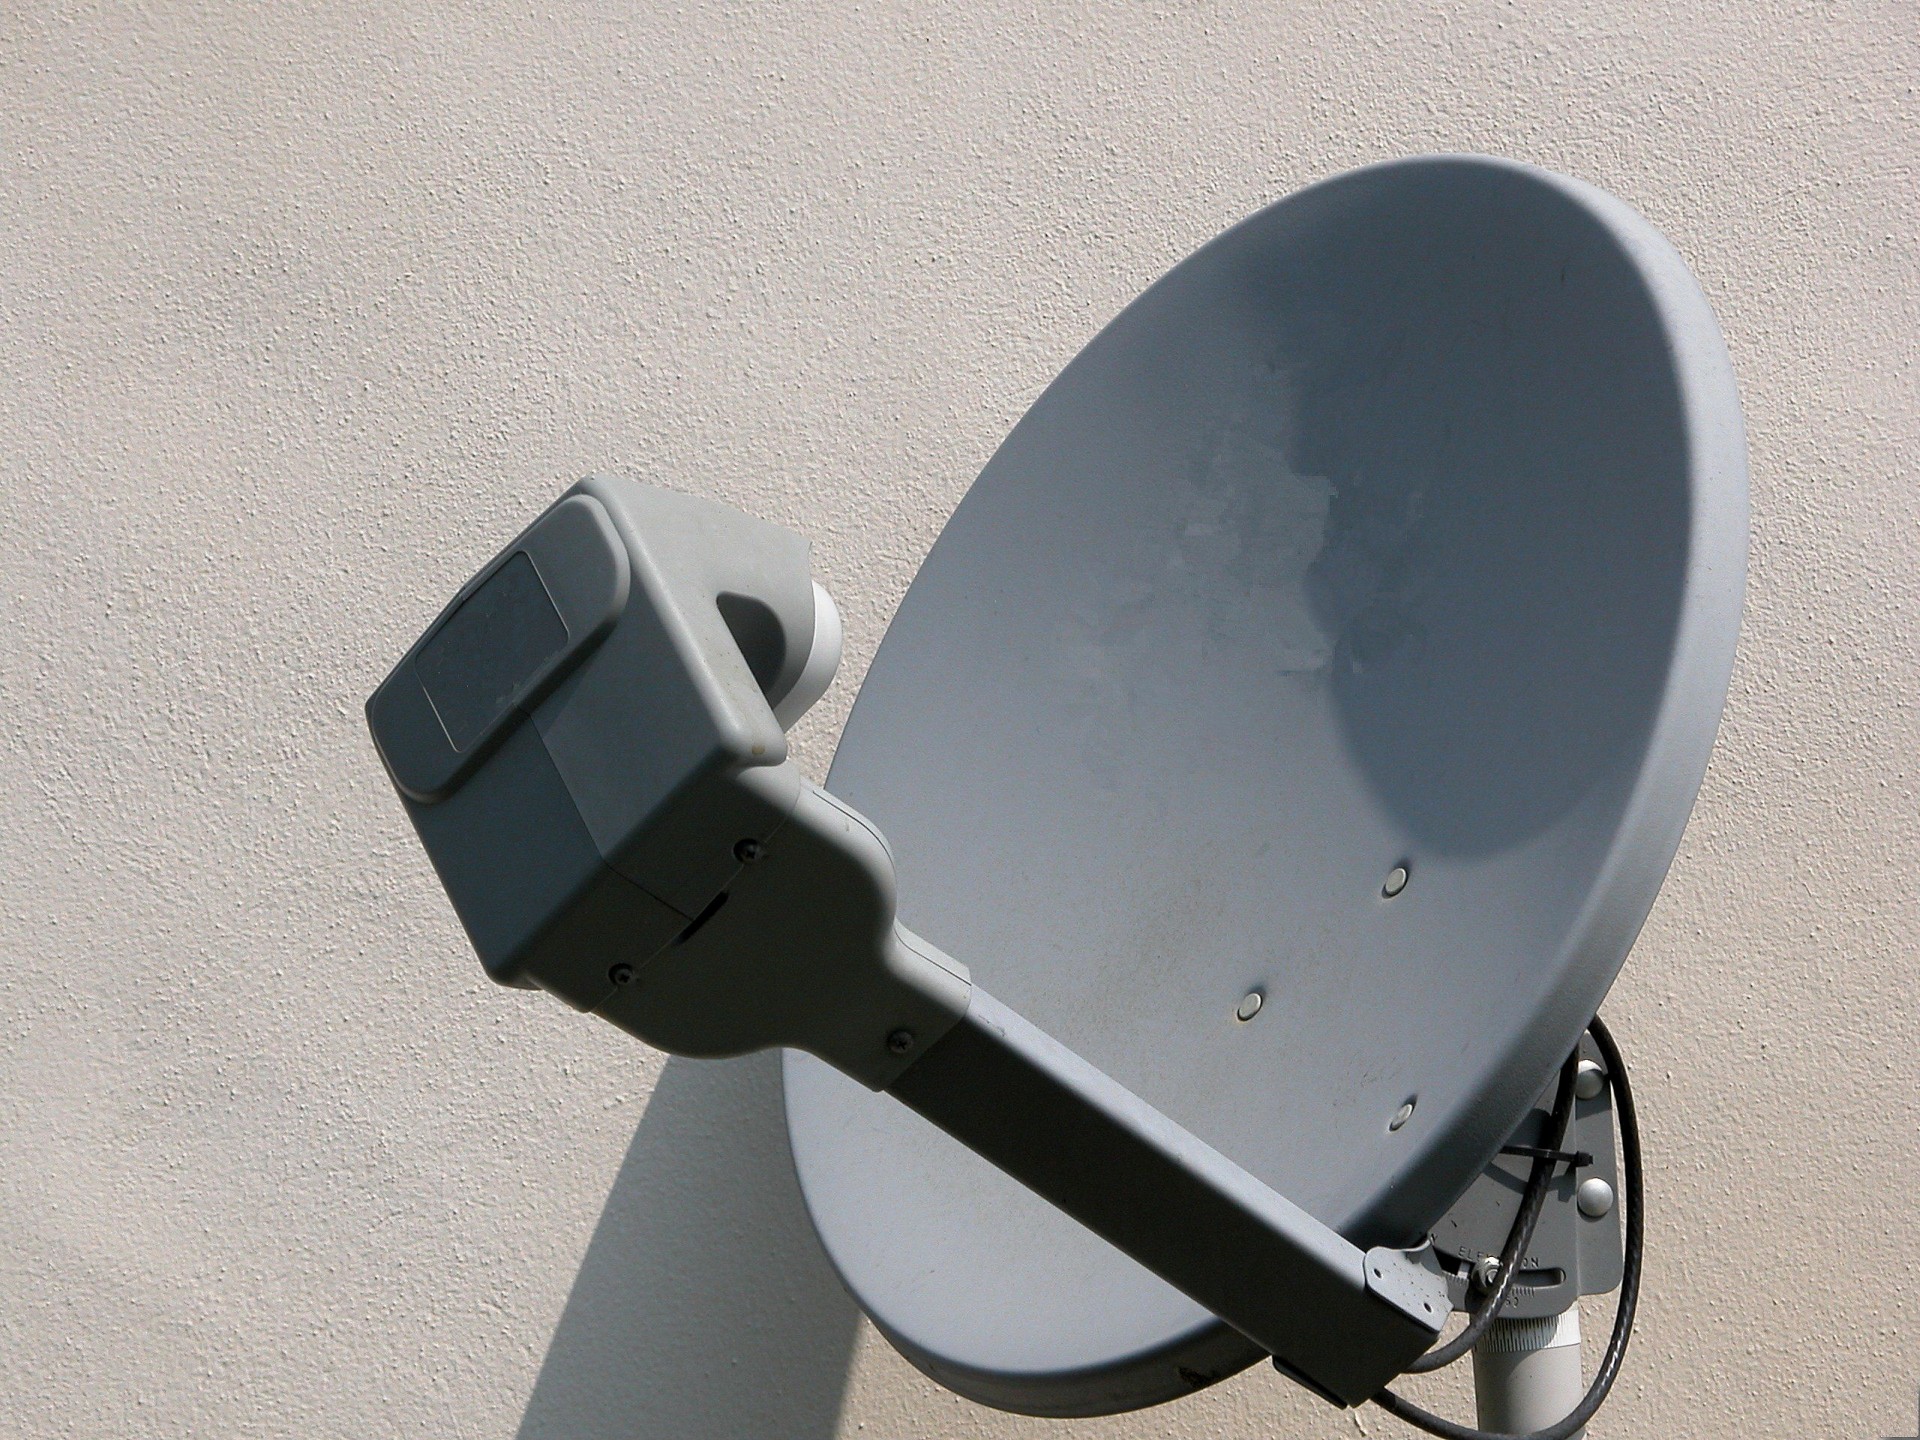 satellite dish communications technology free photo